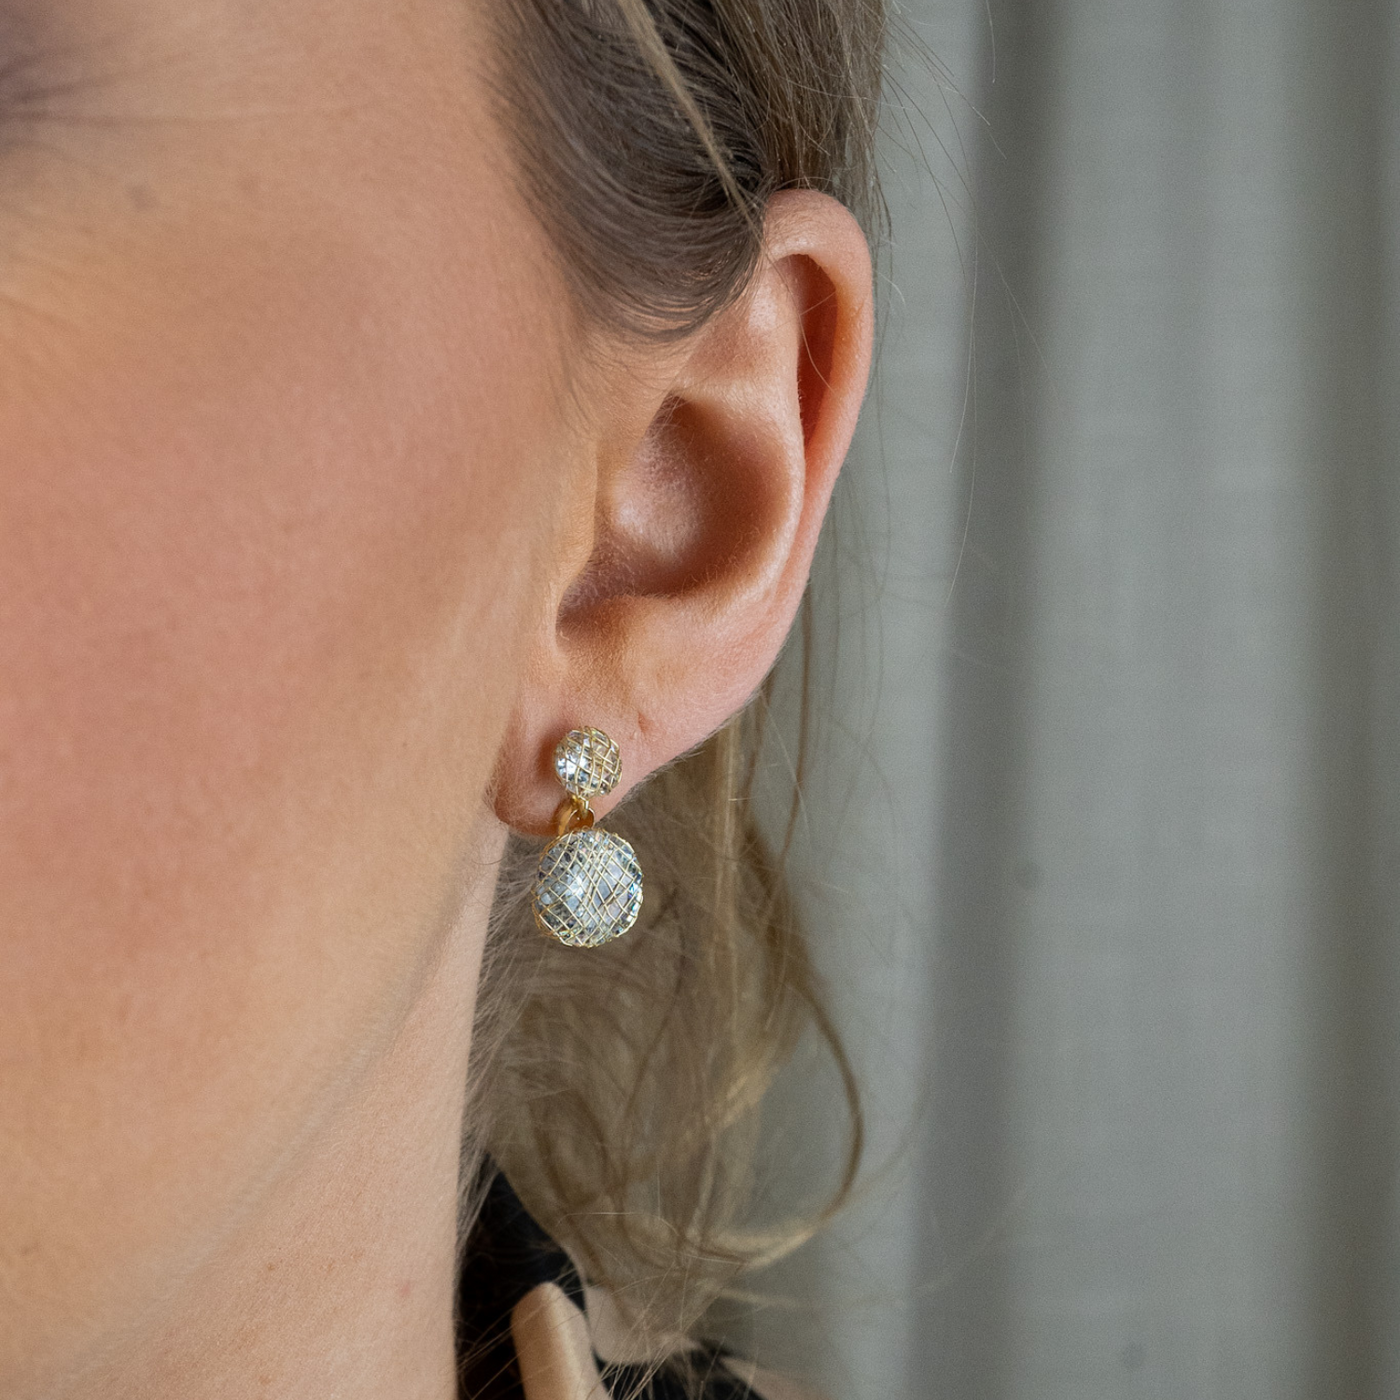 Eternal Grace earrings